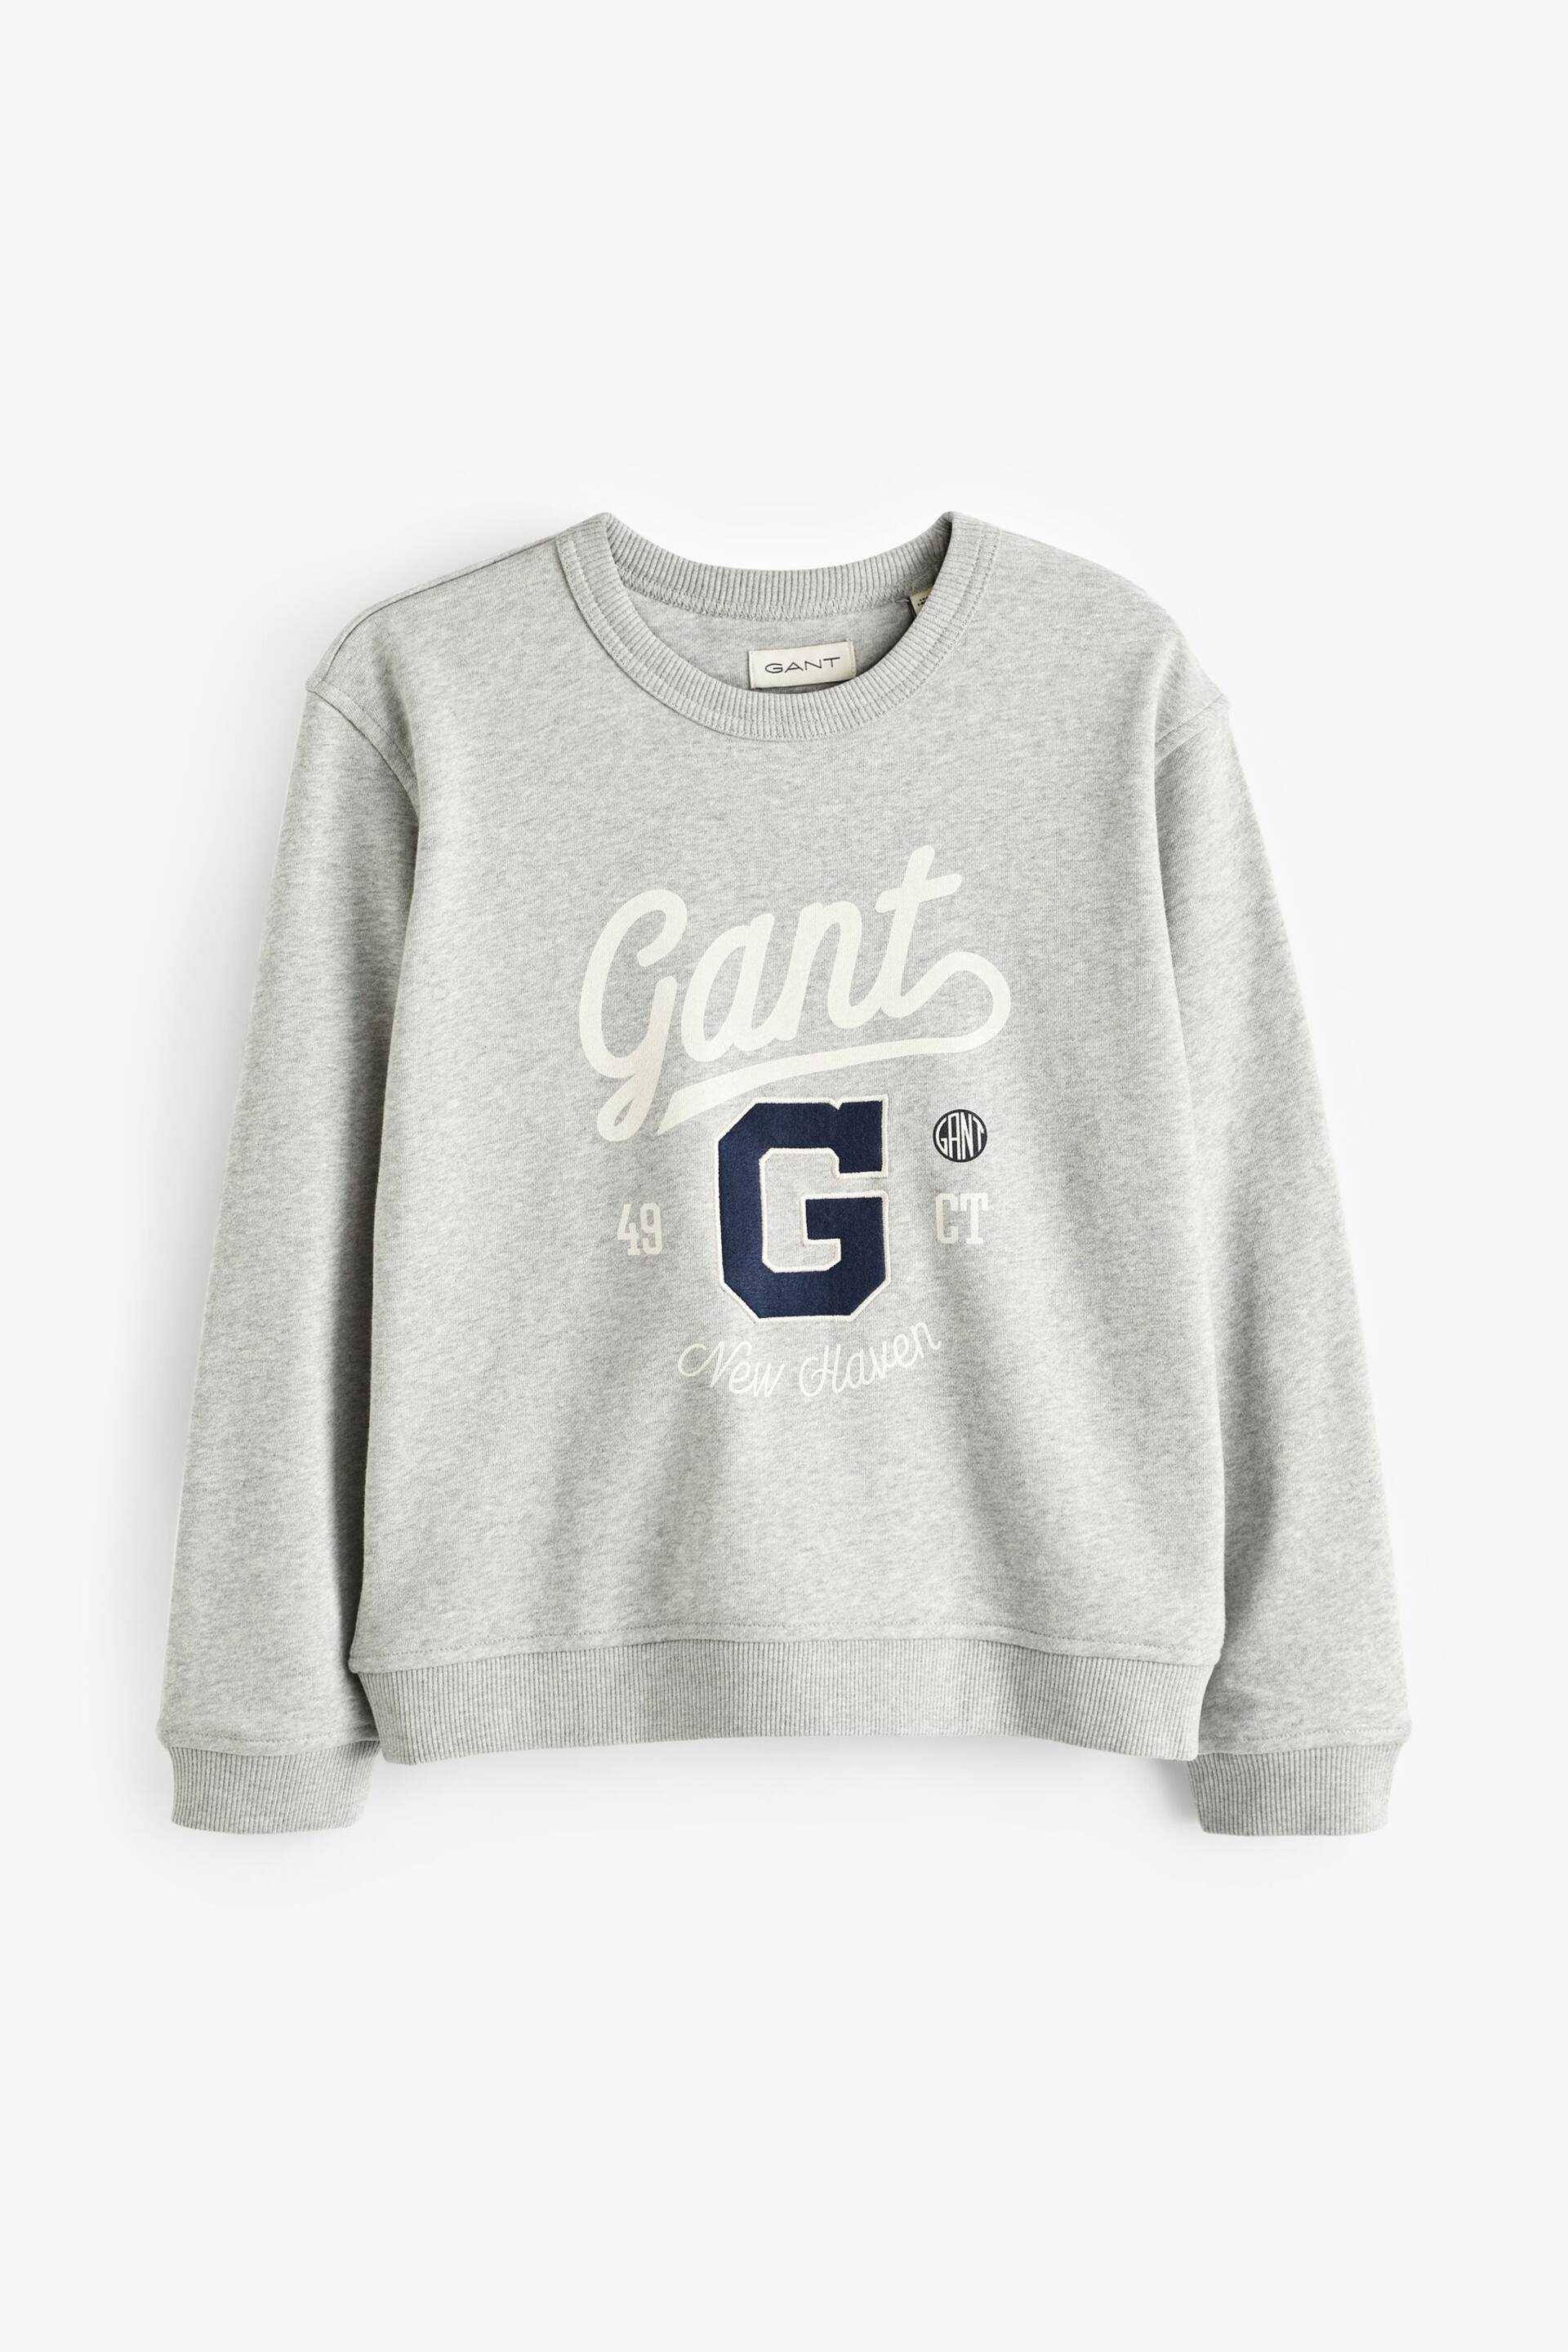 GANT Teens Grey Graphic Crew Neck Sweatshirt - Image 5 of 6